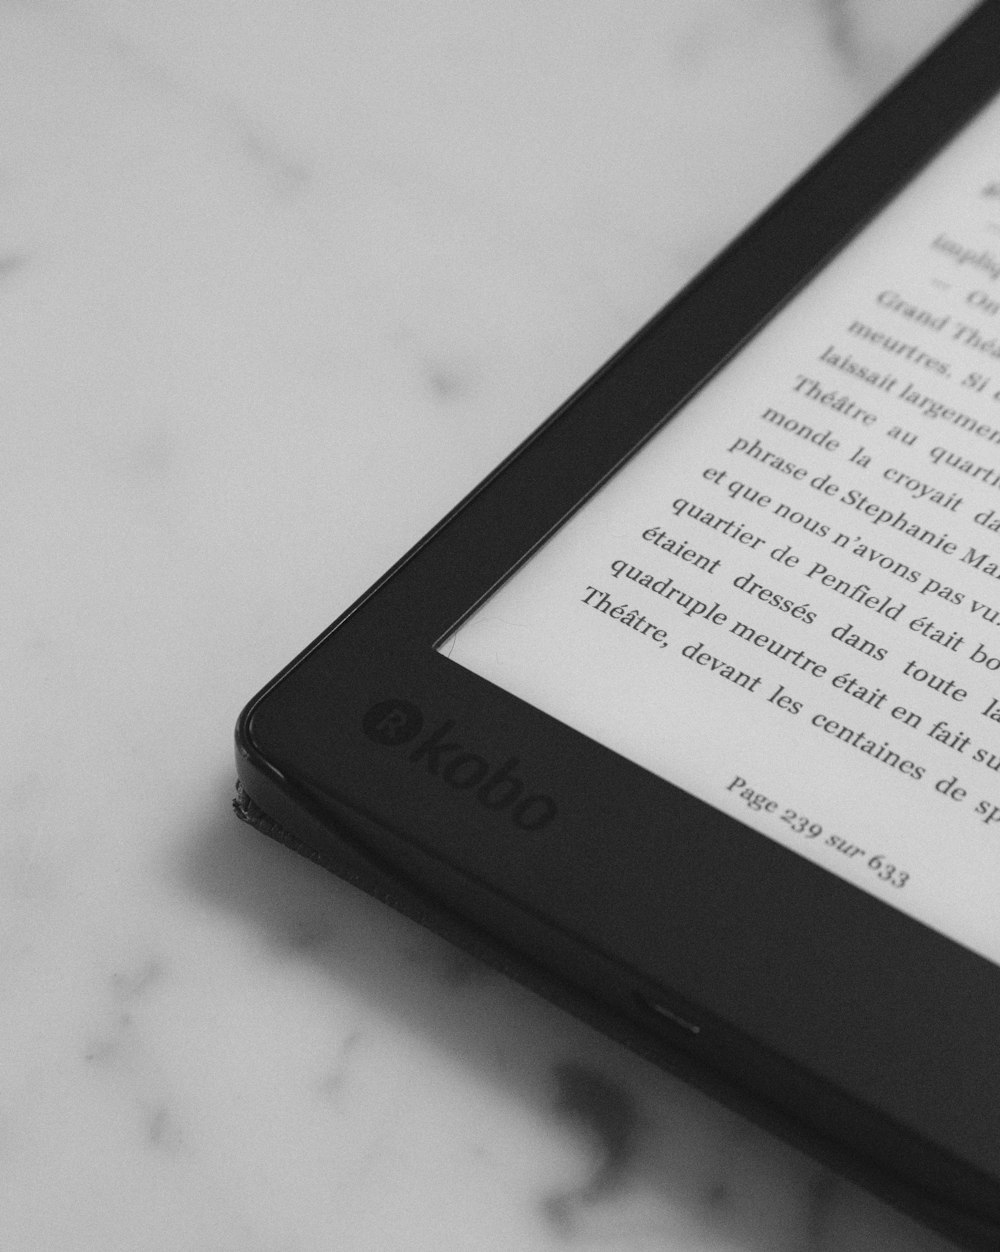 black Kobo eBook reader turned-on